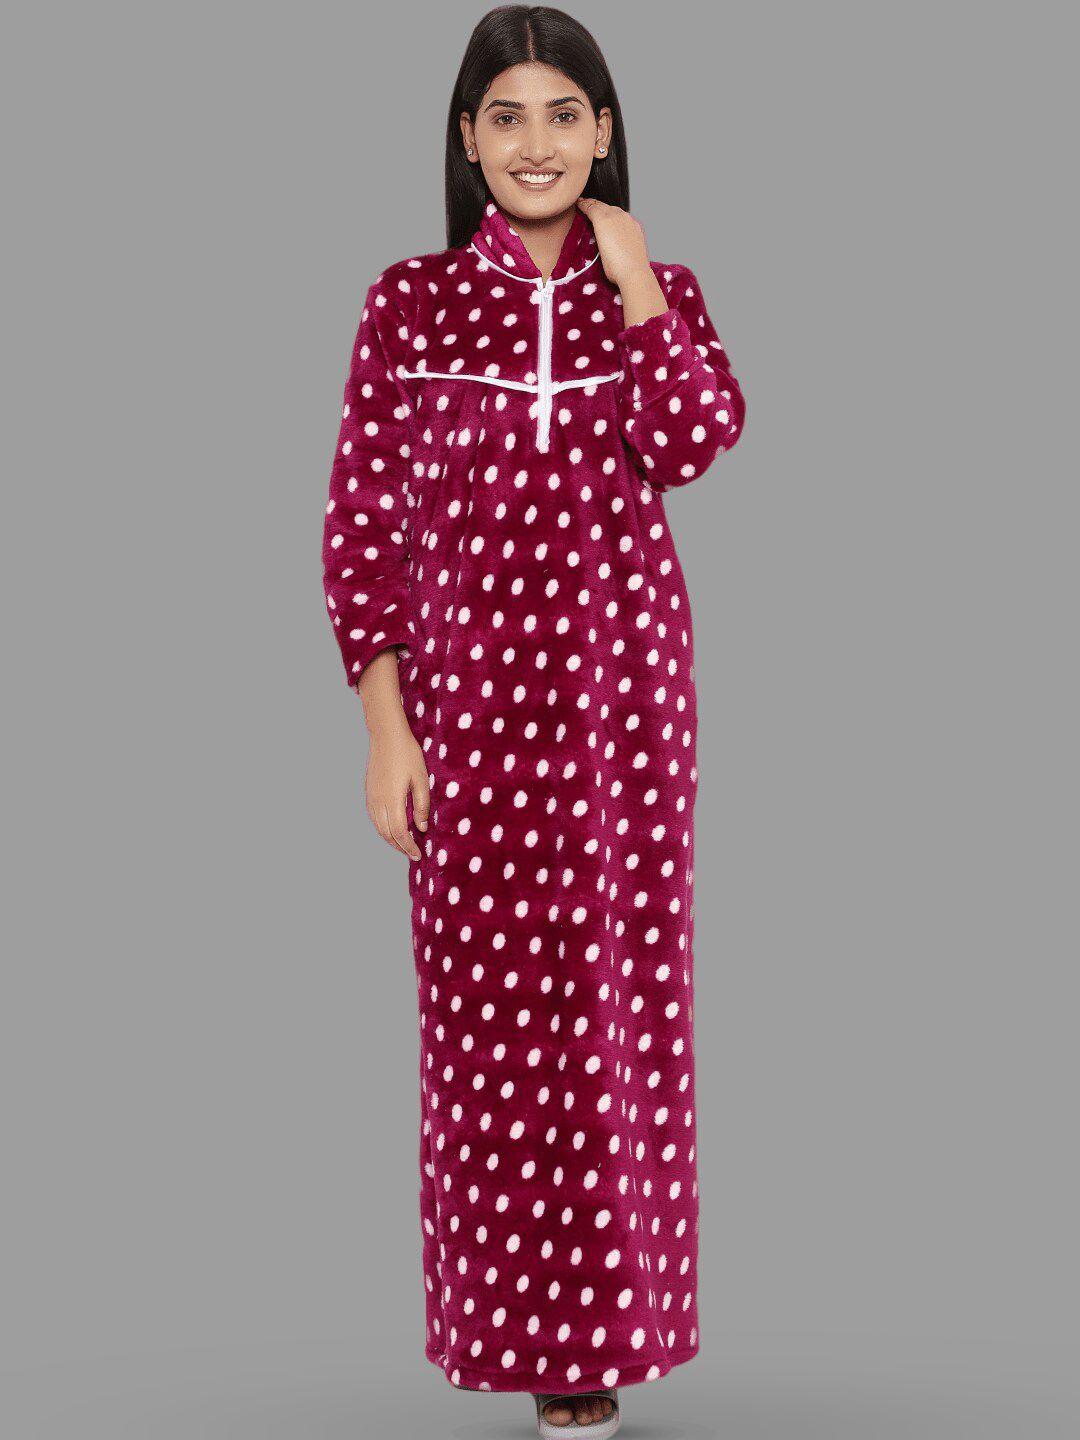 palival polka dots printed maxi nightdress